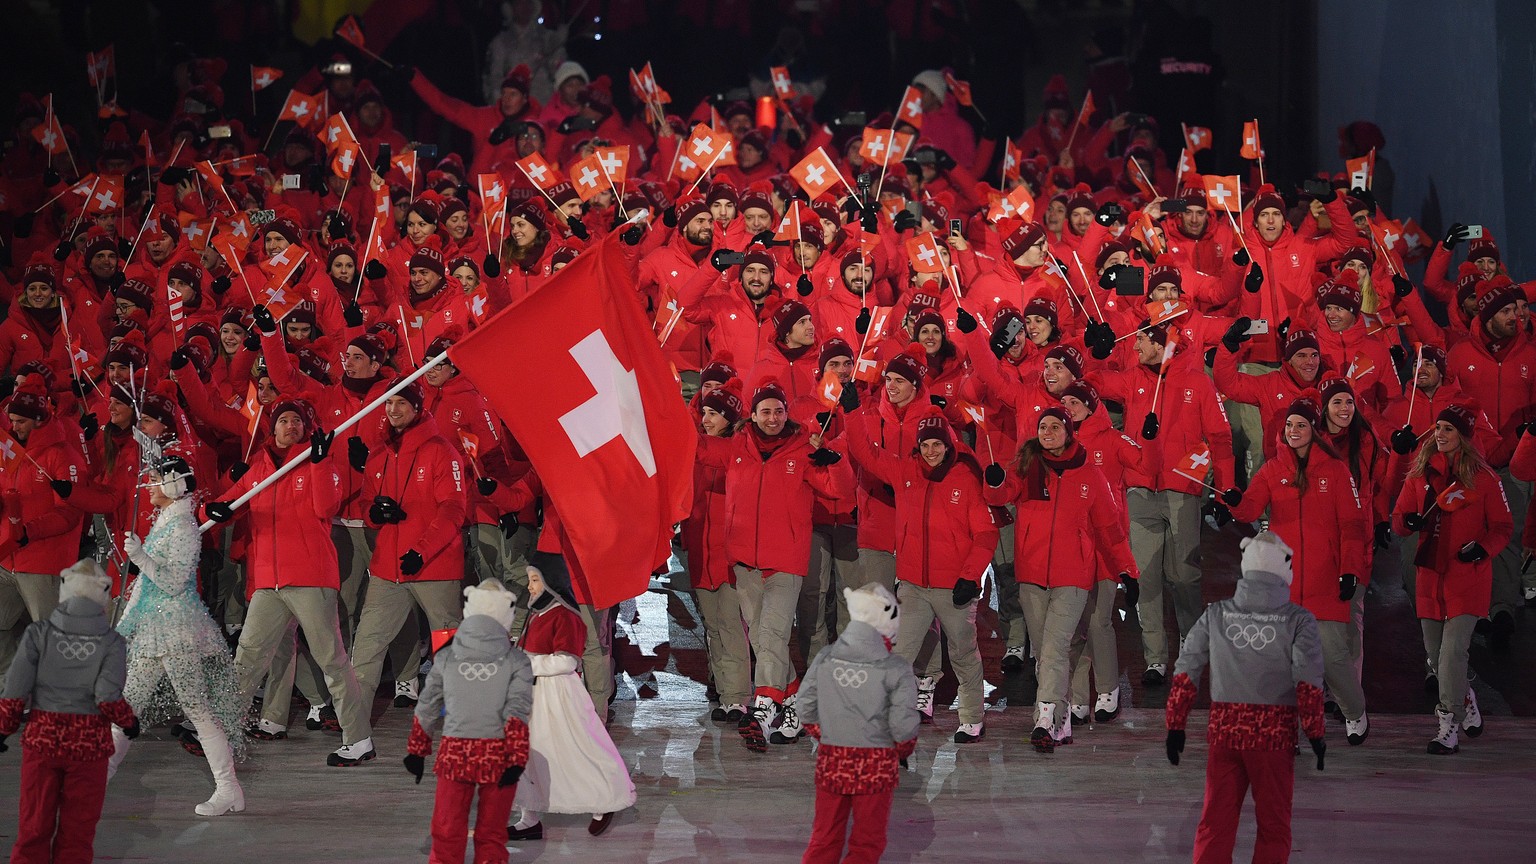 Da war die Hoffnung noch gross: Das Schweizer Team, angeführt von Fahnenträger Dario Cologna, an der Eröffnungsfeier.